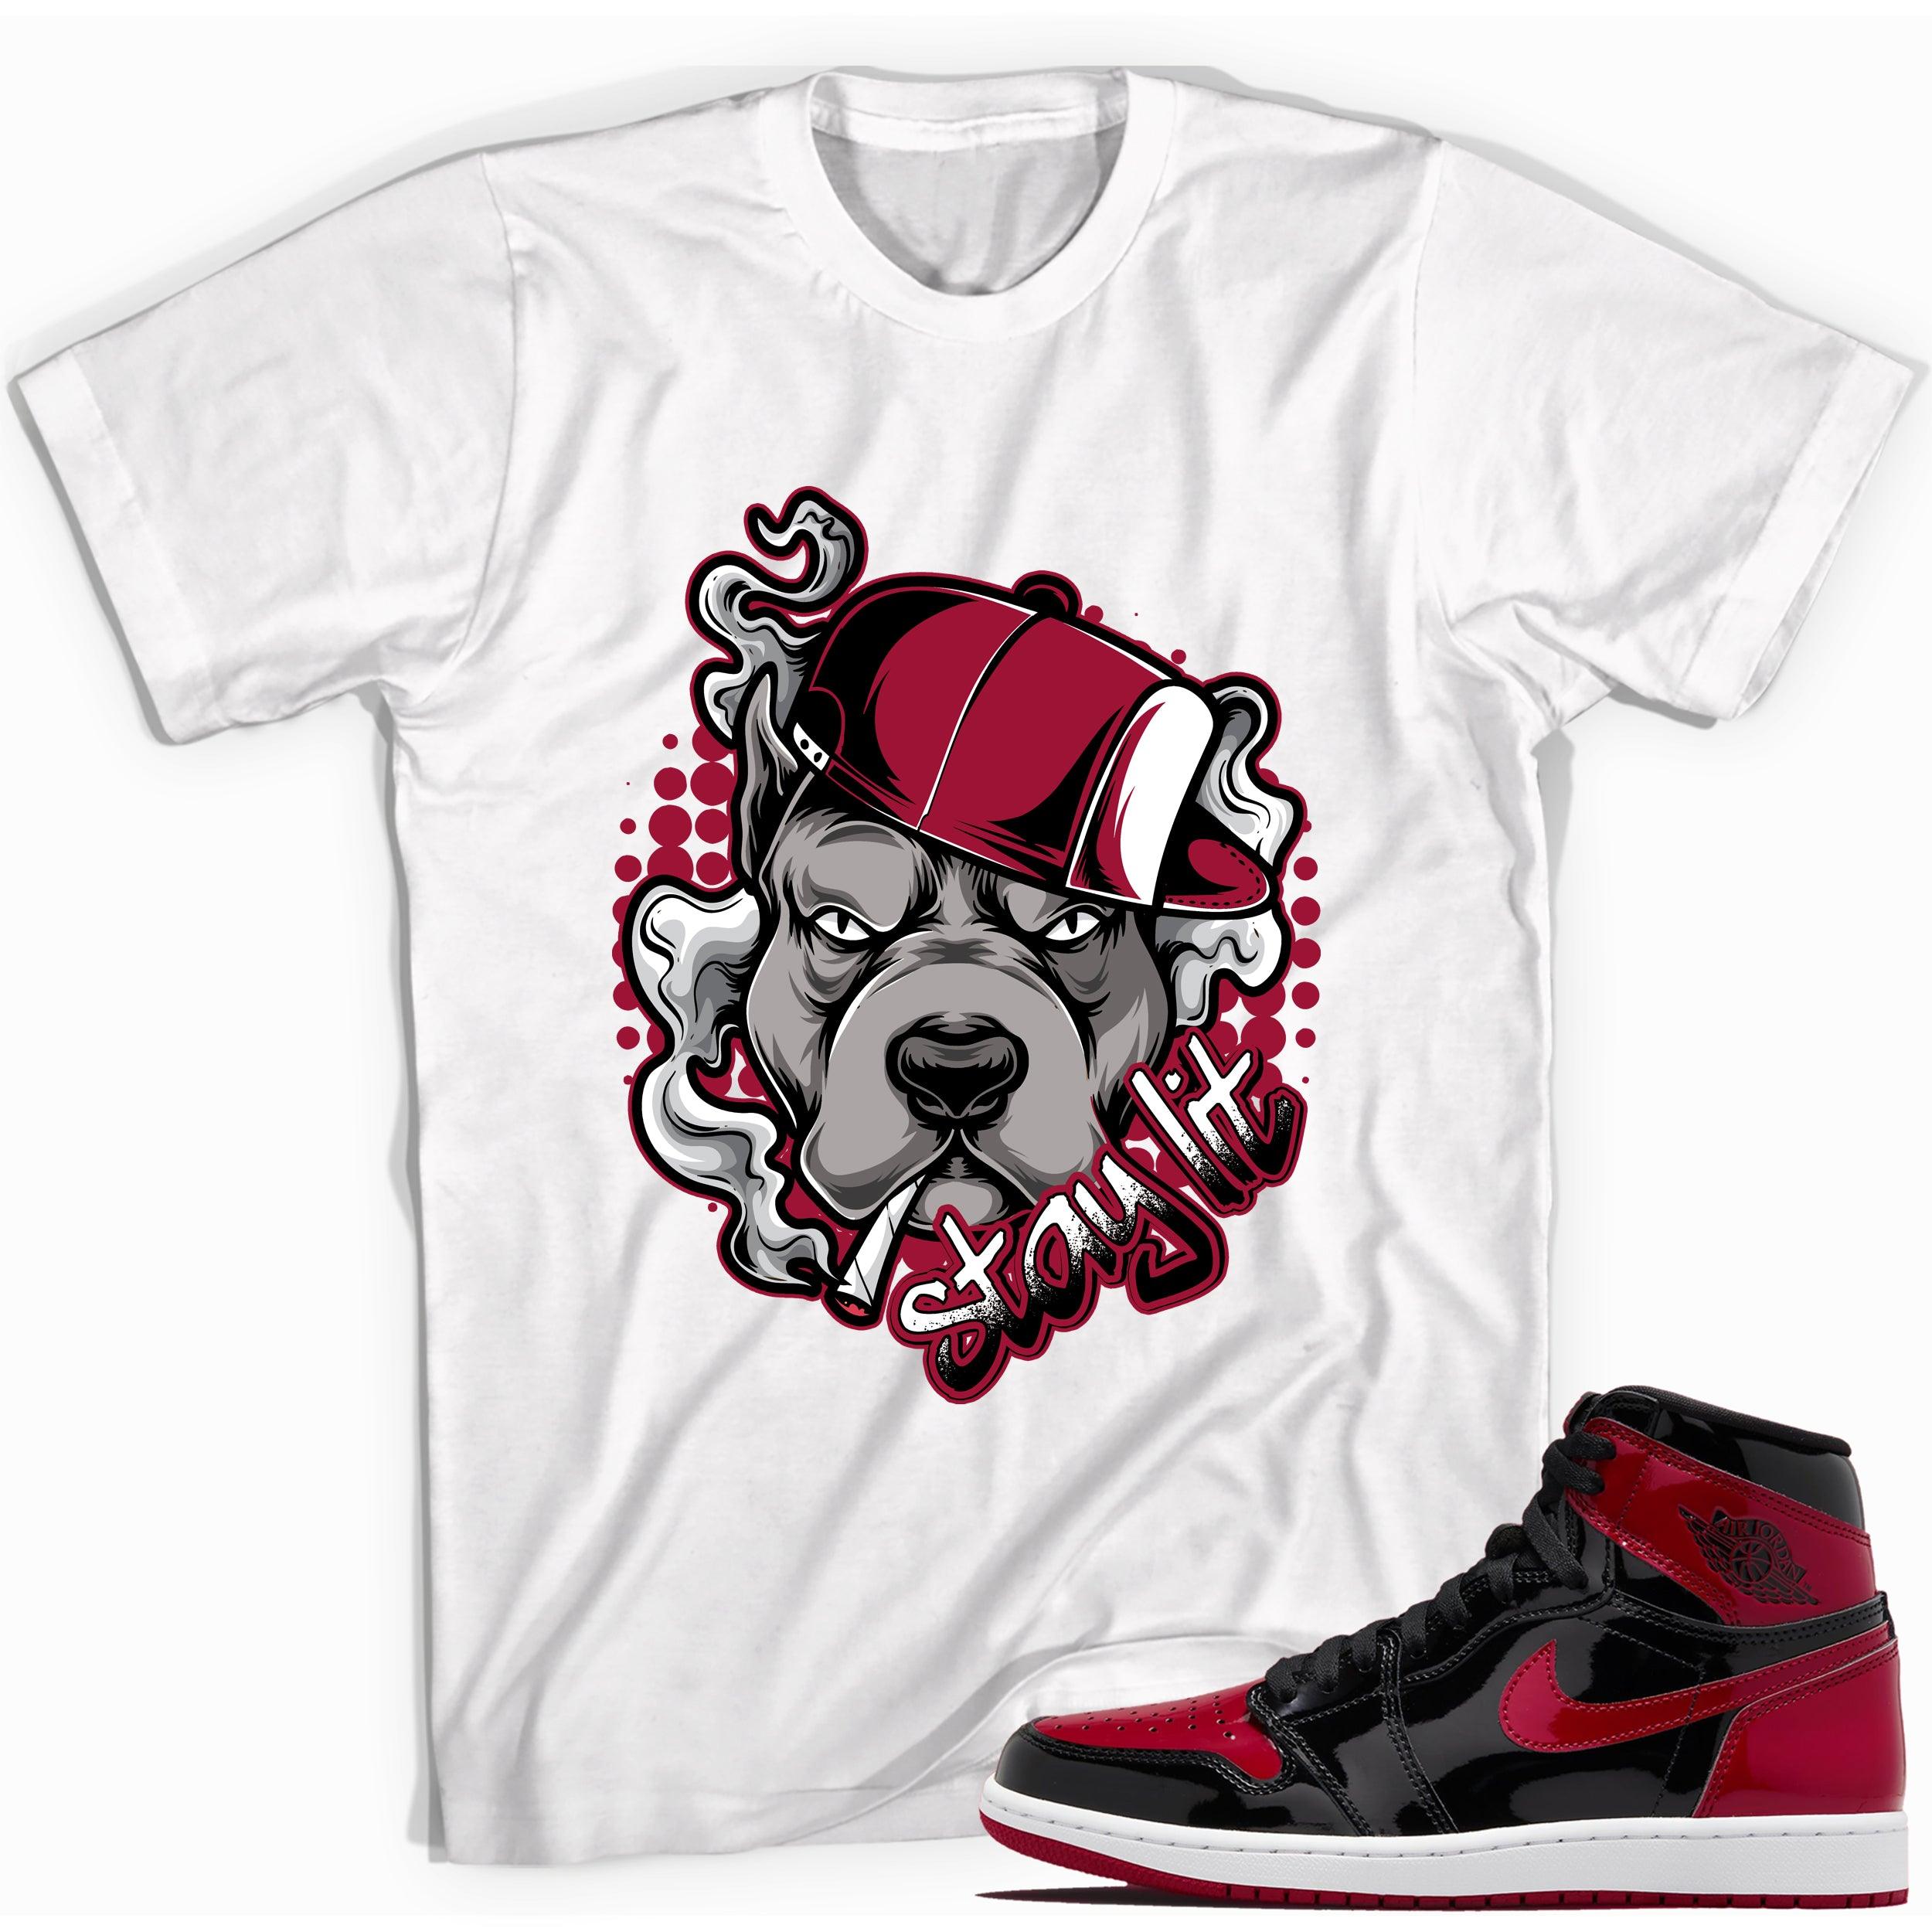 White Stay Lit Sneaker Shirt for Jordan 1s Retro Bred photo